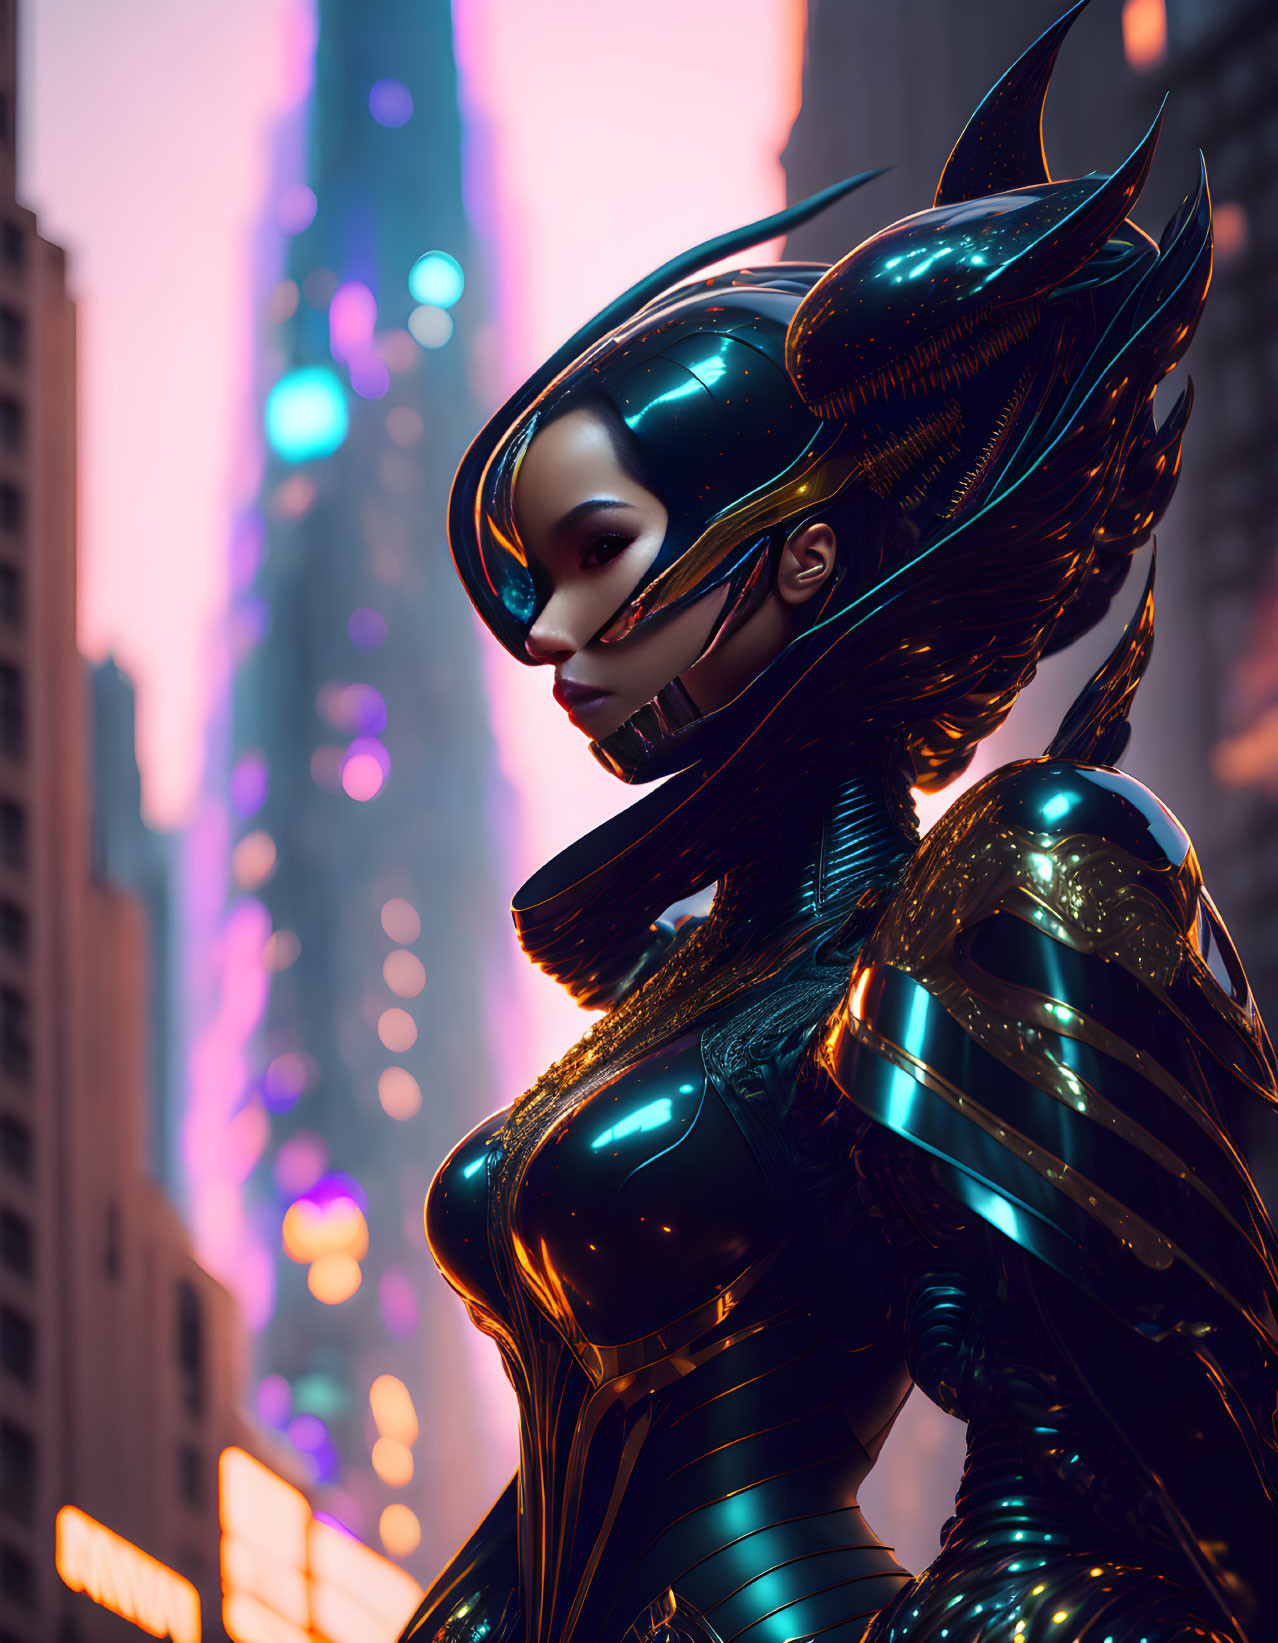 Futuristic female figure in black armor against neon-lit cityscape